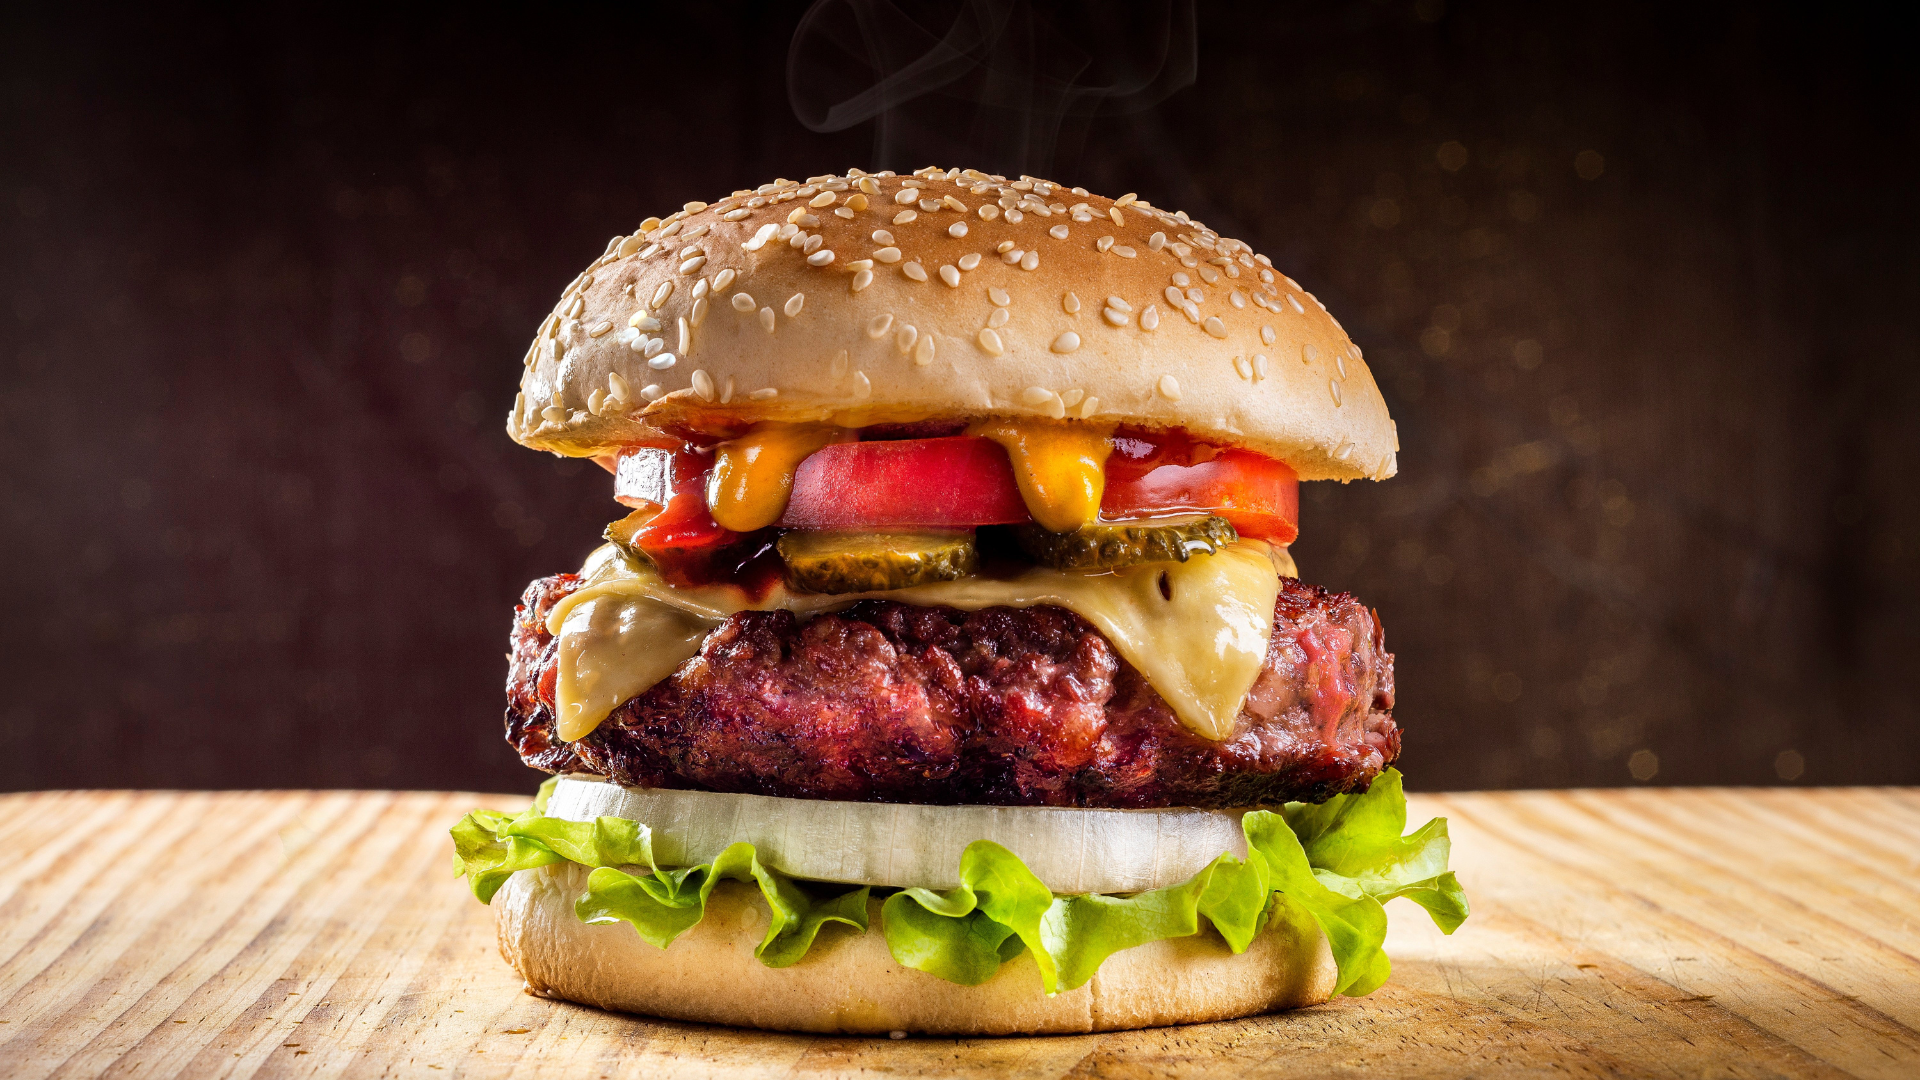 La hamburguesa es un plato que nos sumerge en un mundo de placer culinario.